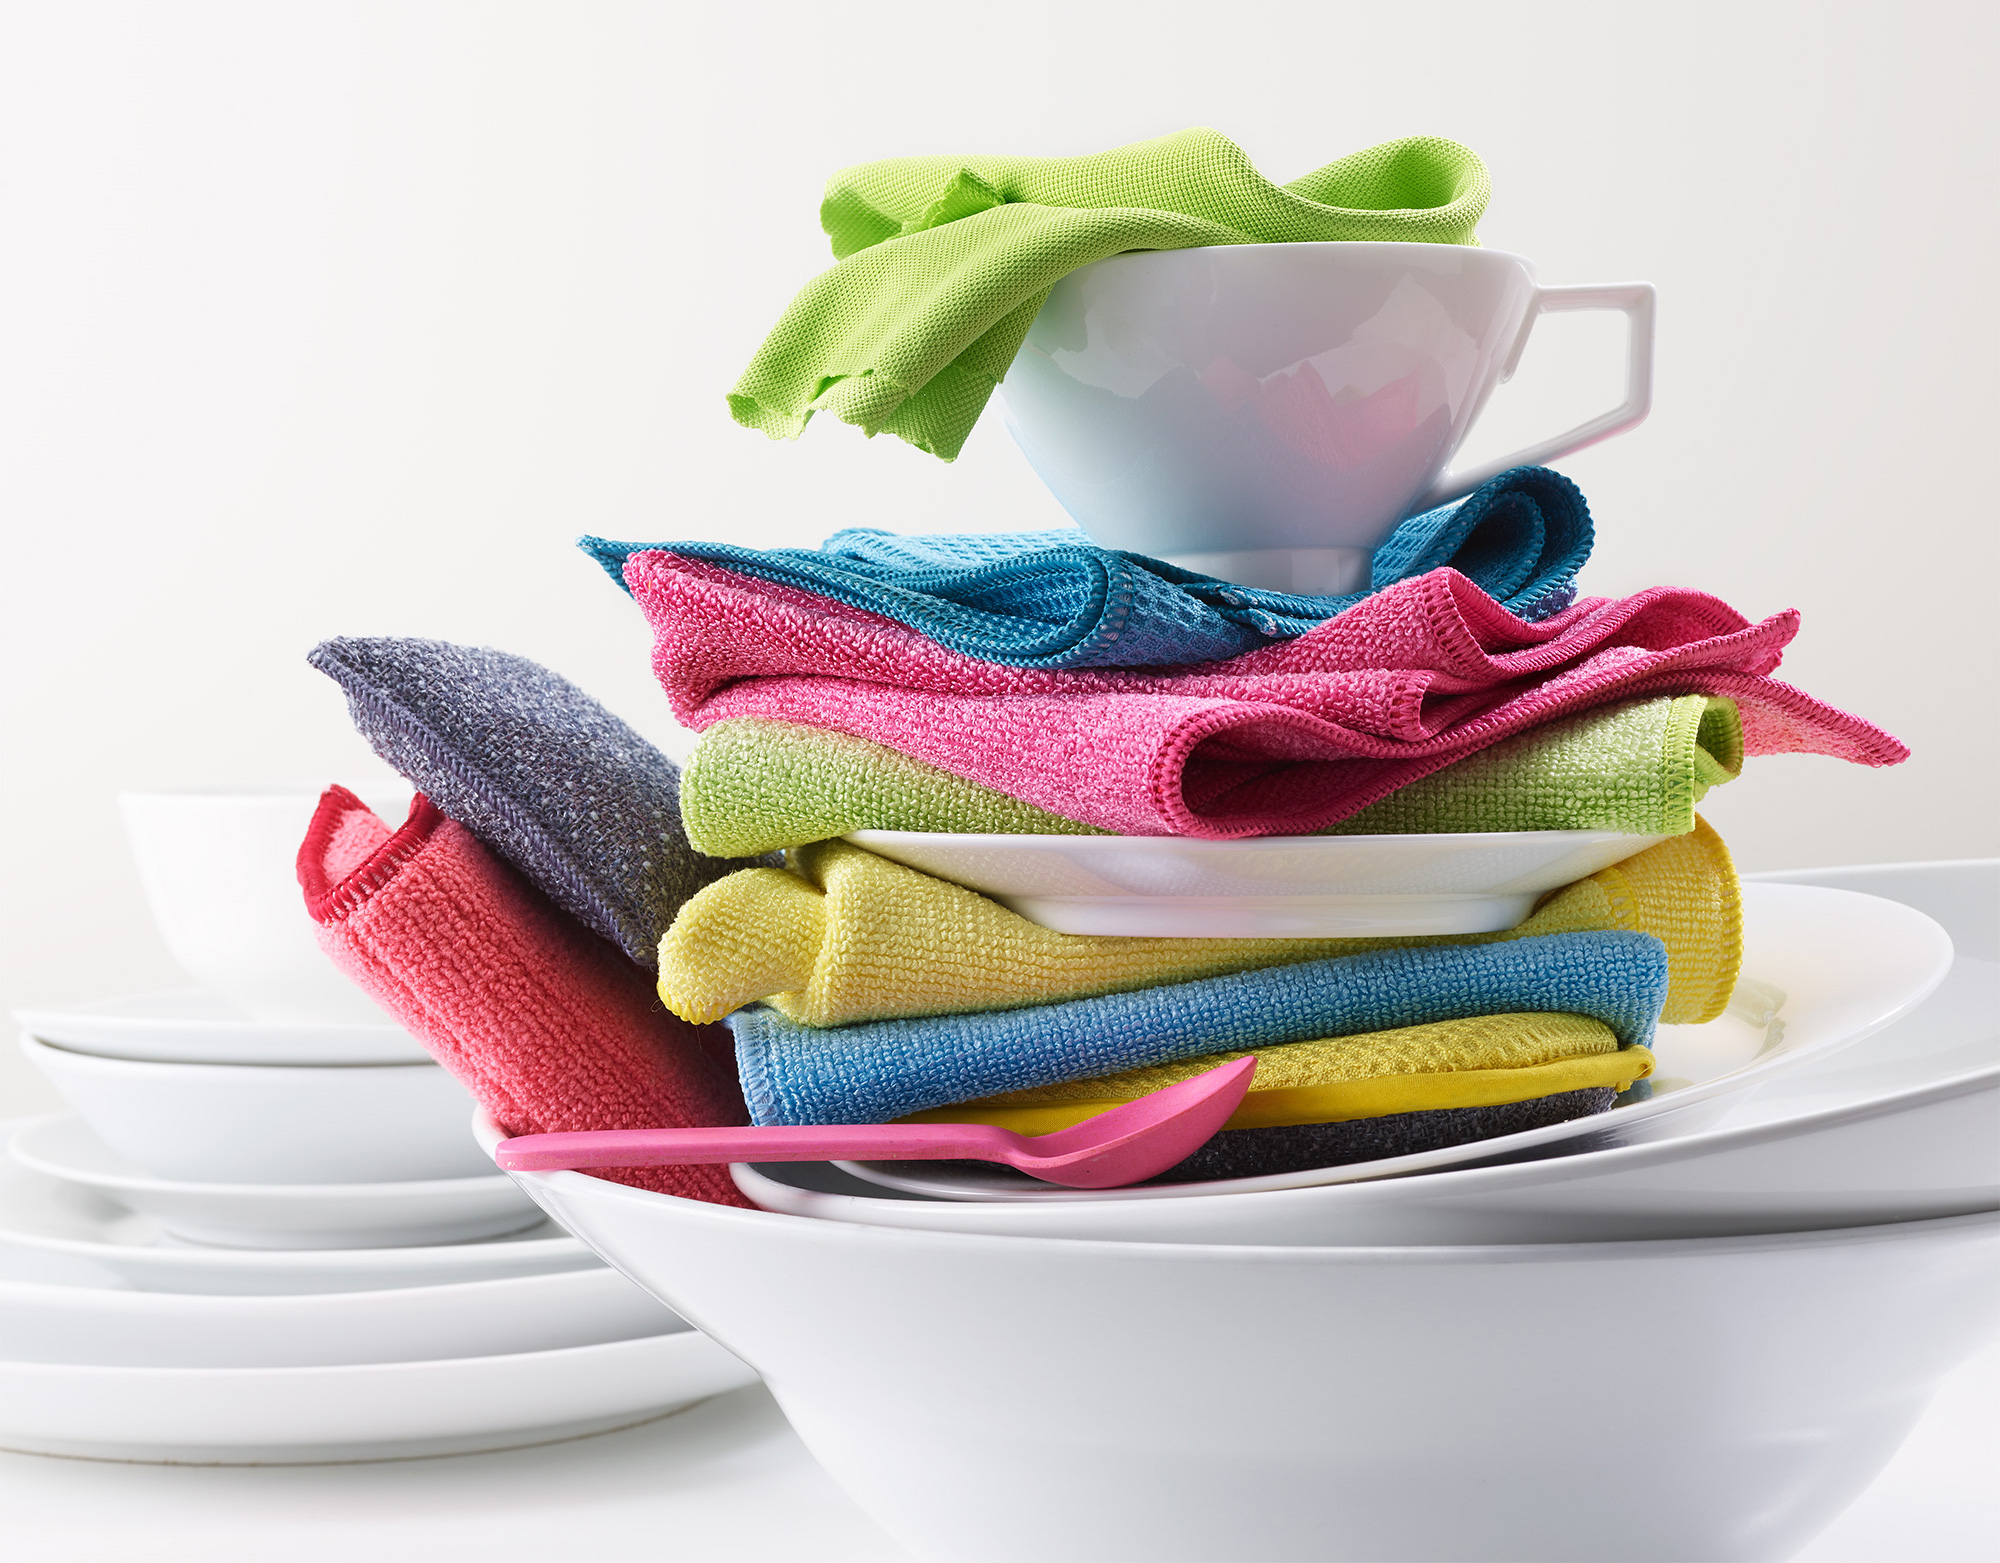 Pads und E-Cloth Reinigungstücher